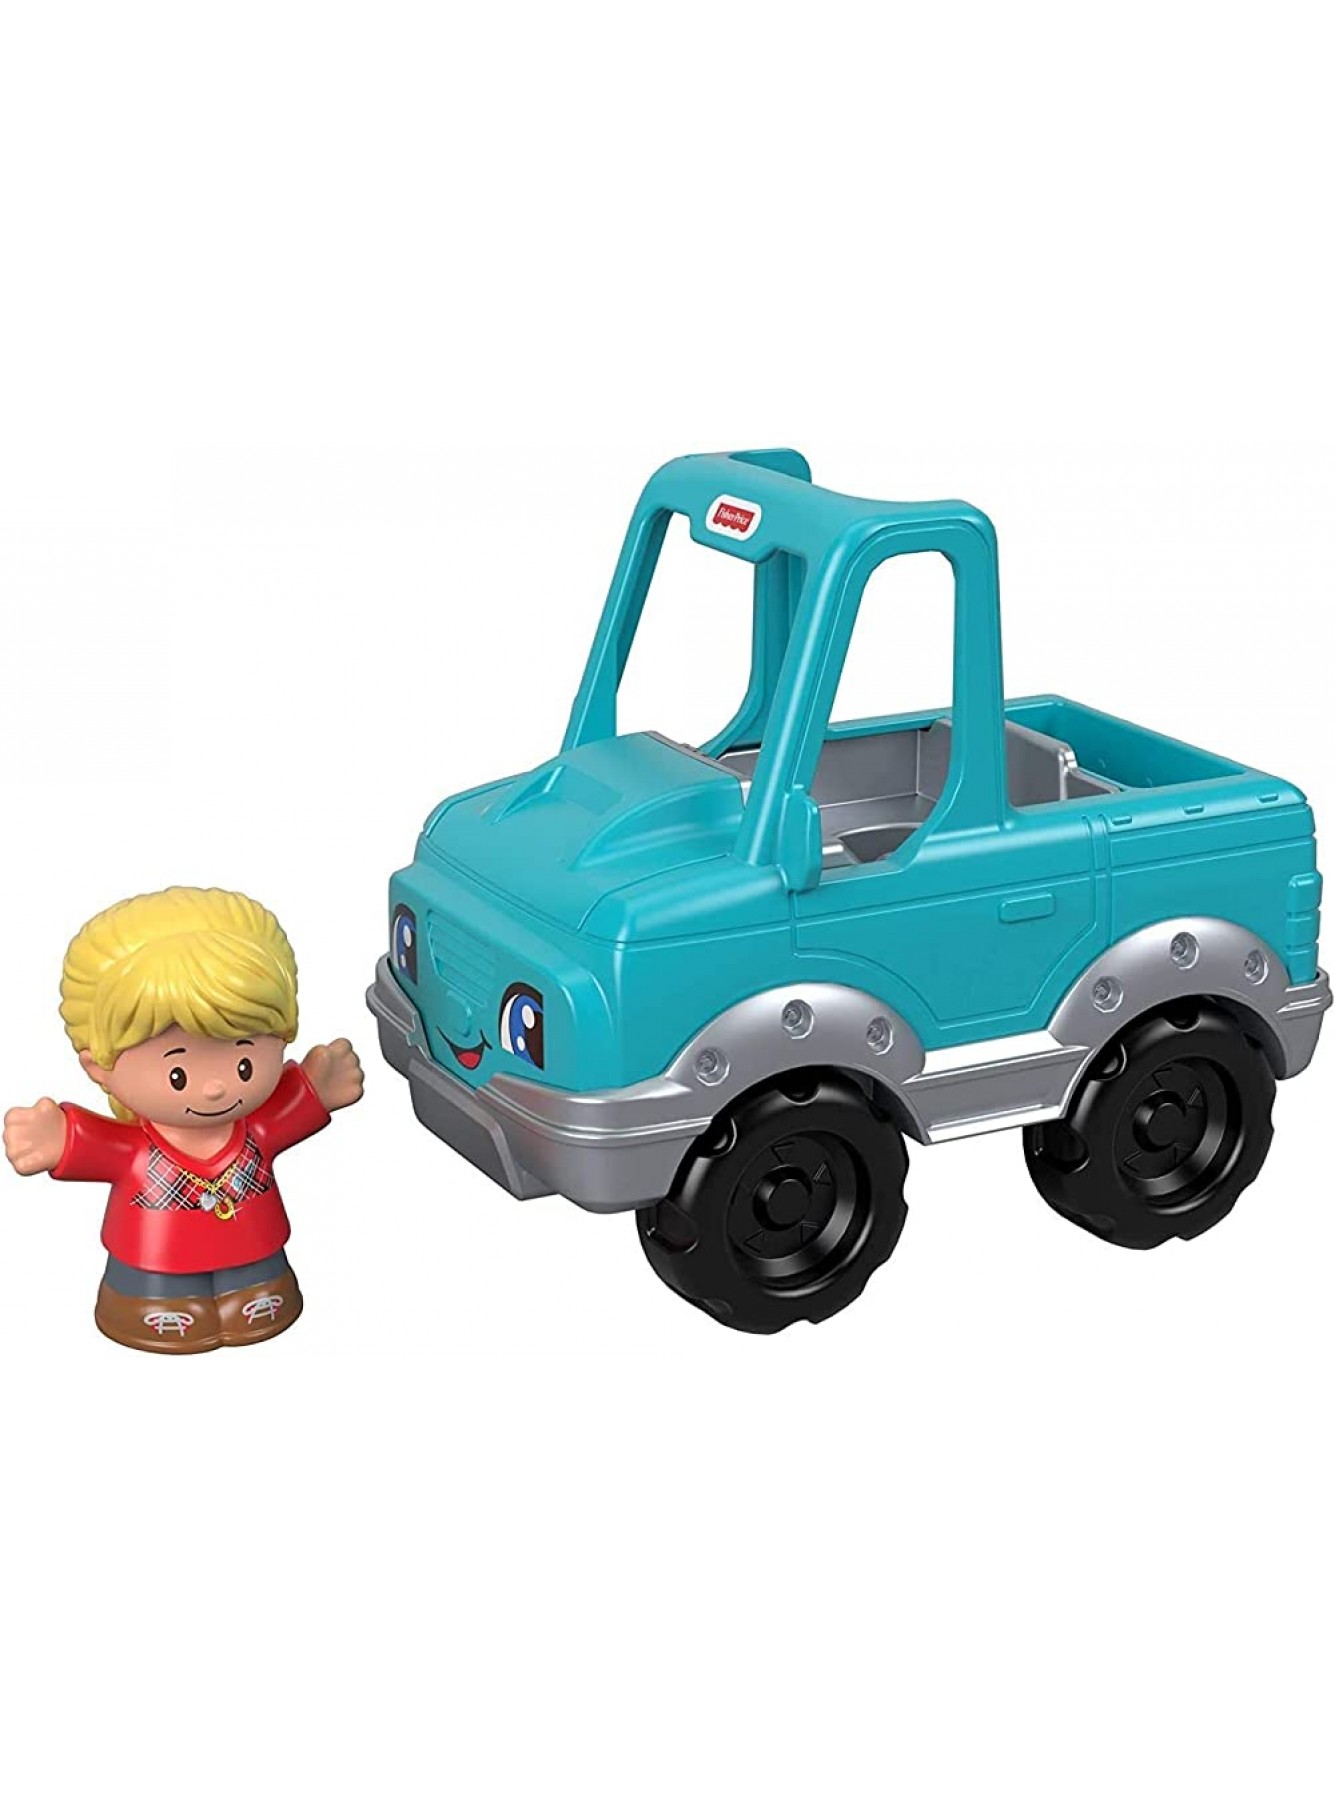 Fisher-Price Mattel – GJL17 Little People – Cowboy und Fahrzeug – Set mit Little People Figur und Fahrzeug - B07MCFCKVJ